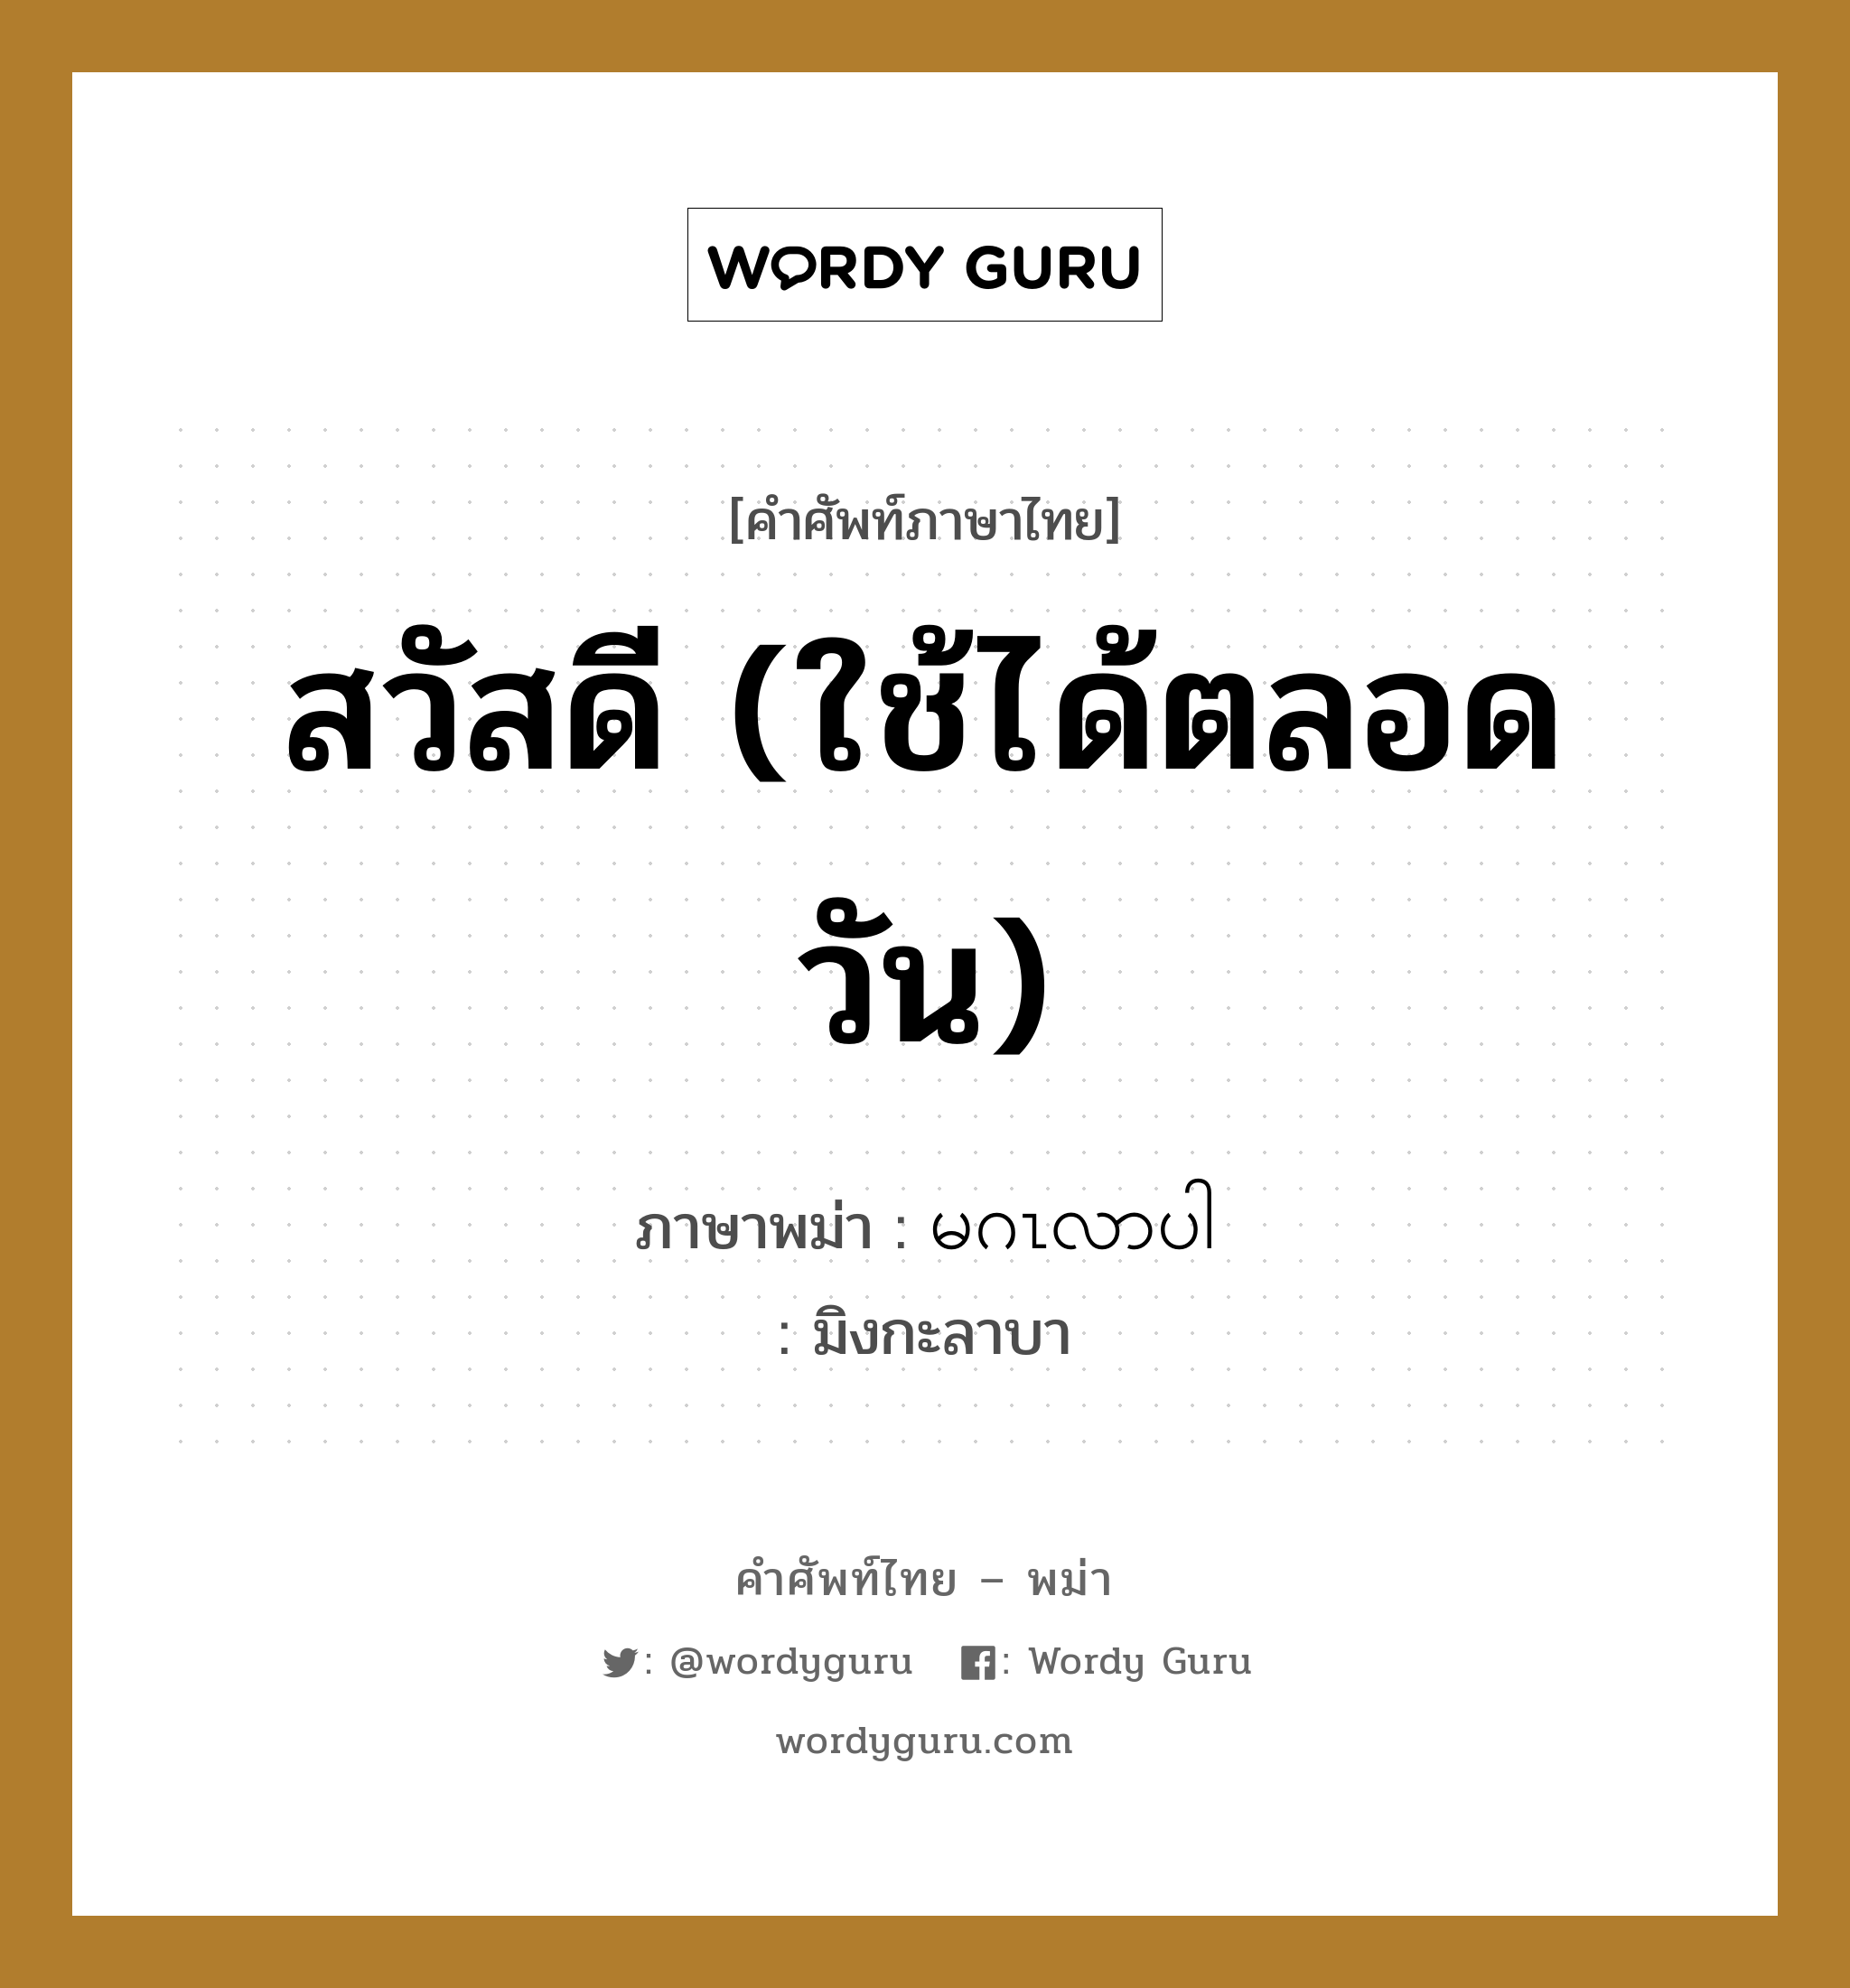 สวัสดี (ใช้ได้ตลอดวัน) แปลว่า? คำศัพท์ในกลุ่มประเภท คำทักทาย, คำศัพท์ภาษาไทย - พม่า สวัสดี (ใช้ได้ตลอดวัน) ภาษาพม่า မဂၤလာပါ หมวด คำทักทาย มิงกะลาบา หมวด คำทักทาย